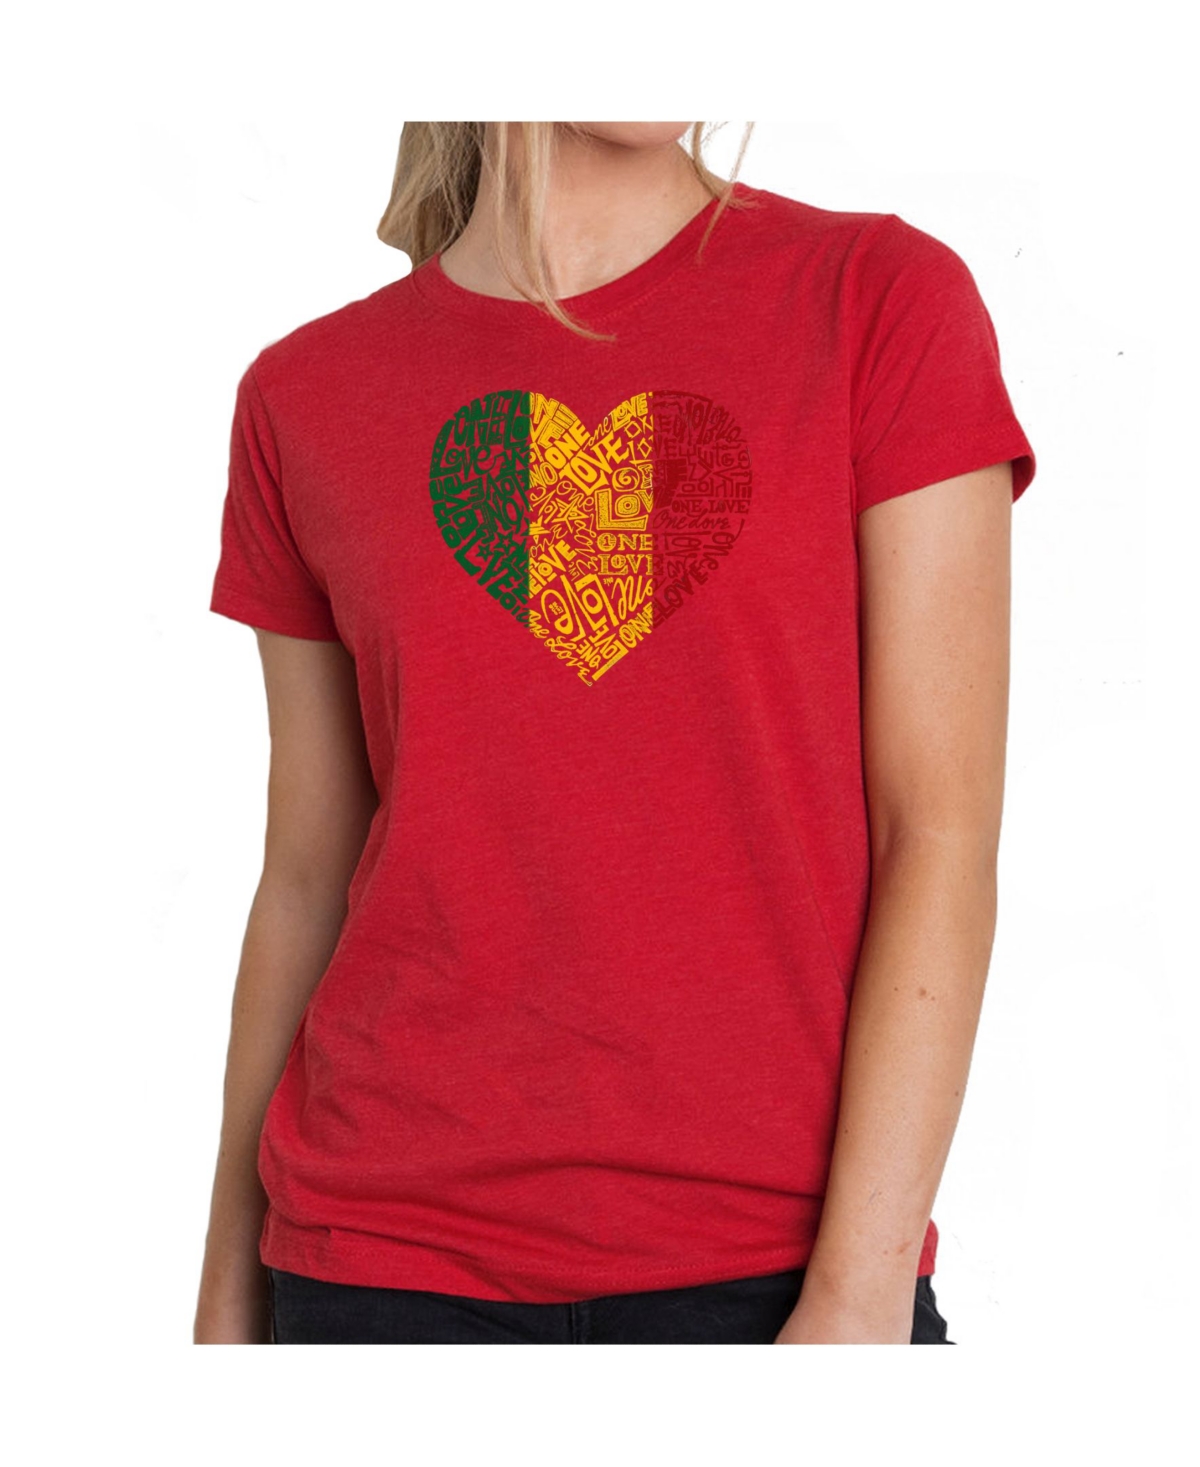 Women's Premium Word Art T-Shirt - One Love Heart - Red